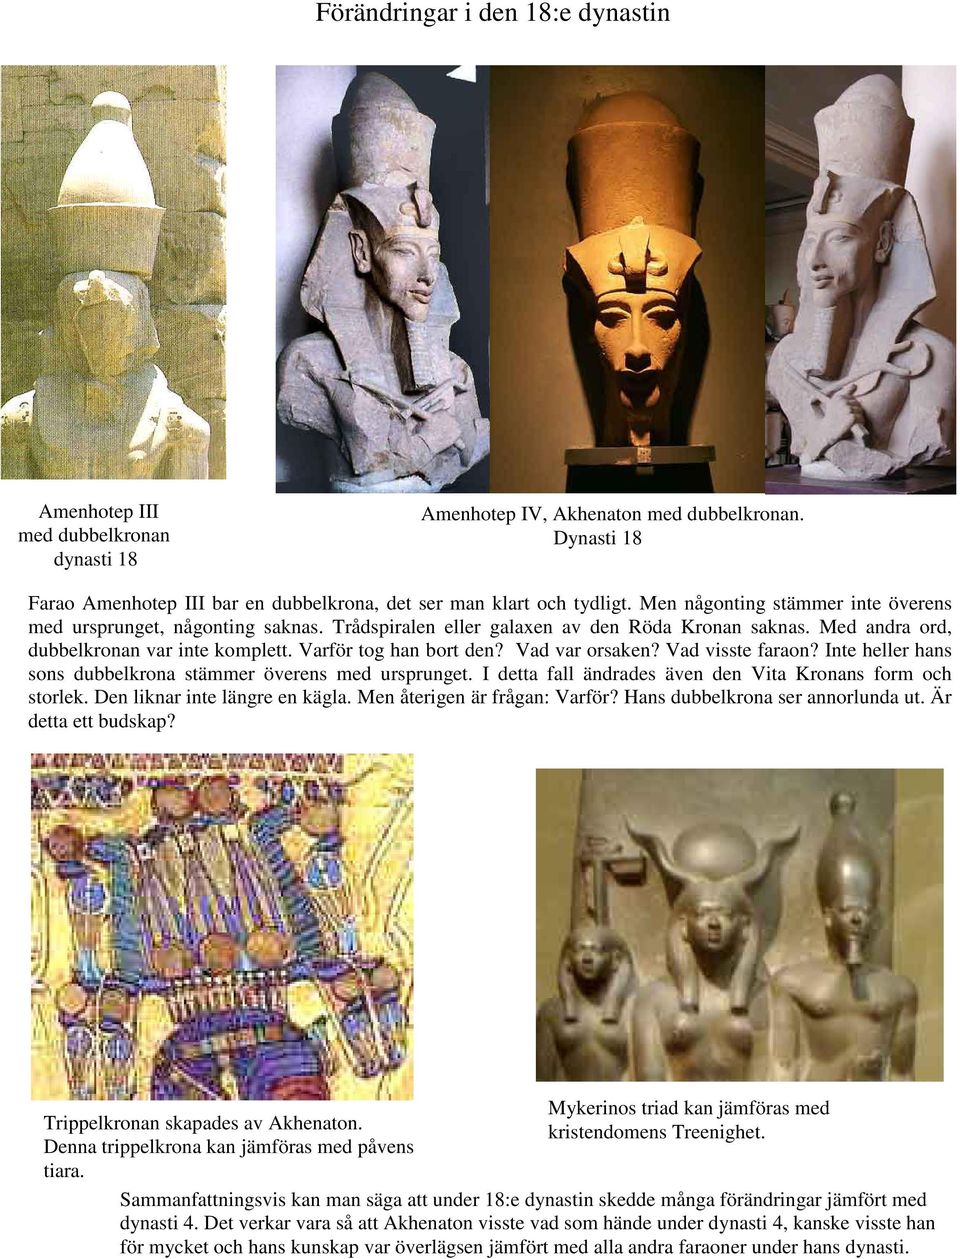 Vad var orsaken? Vad visste faraon? Inte heller hans sons dubbelkrona stämmer överens med ursprunget. I detta fall ändrades även den Vita Kronans form och storlek. Den liknar inte längre en kägla.